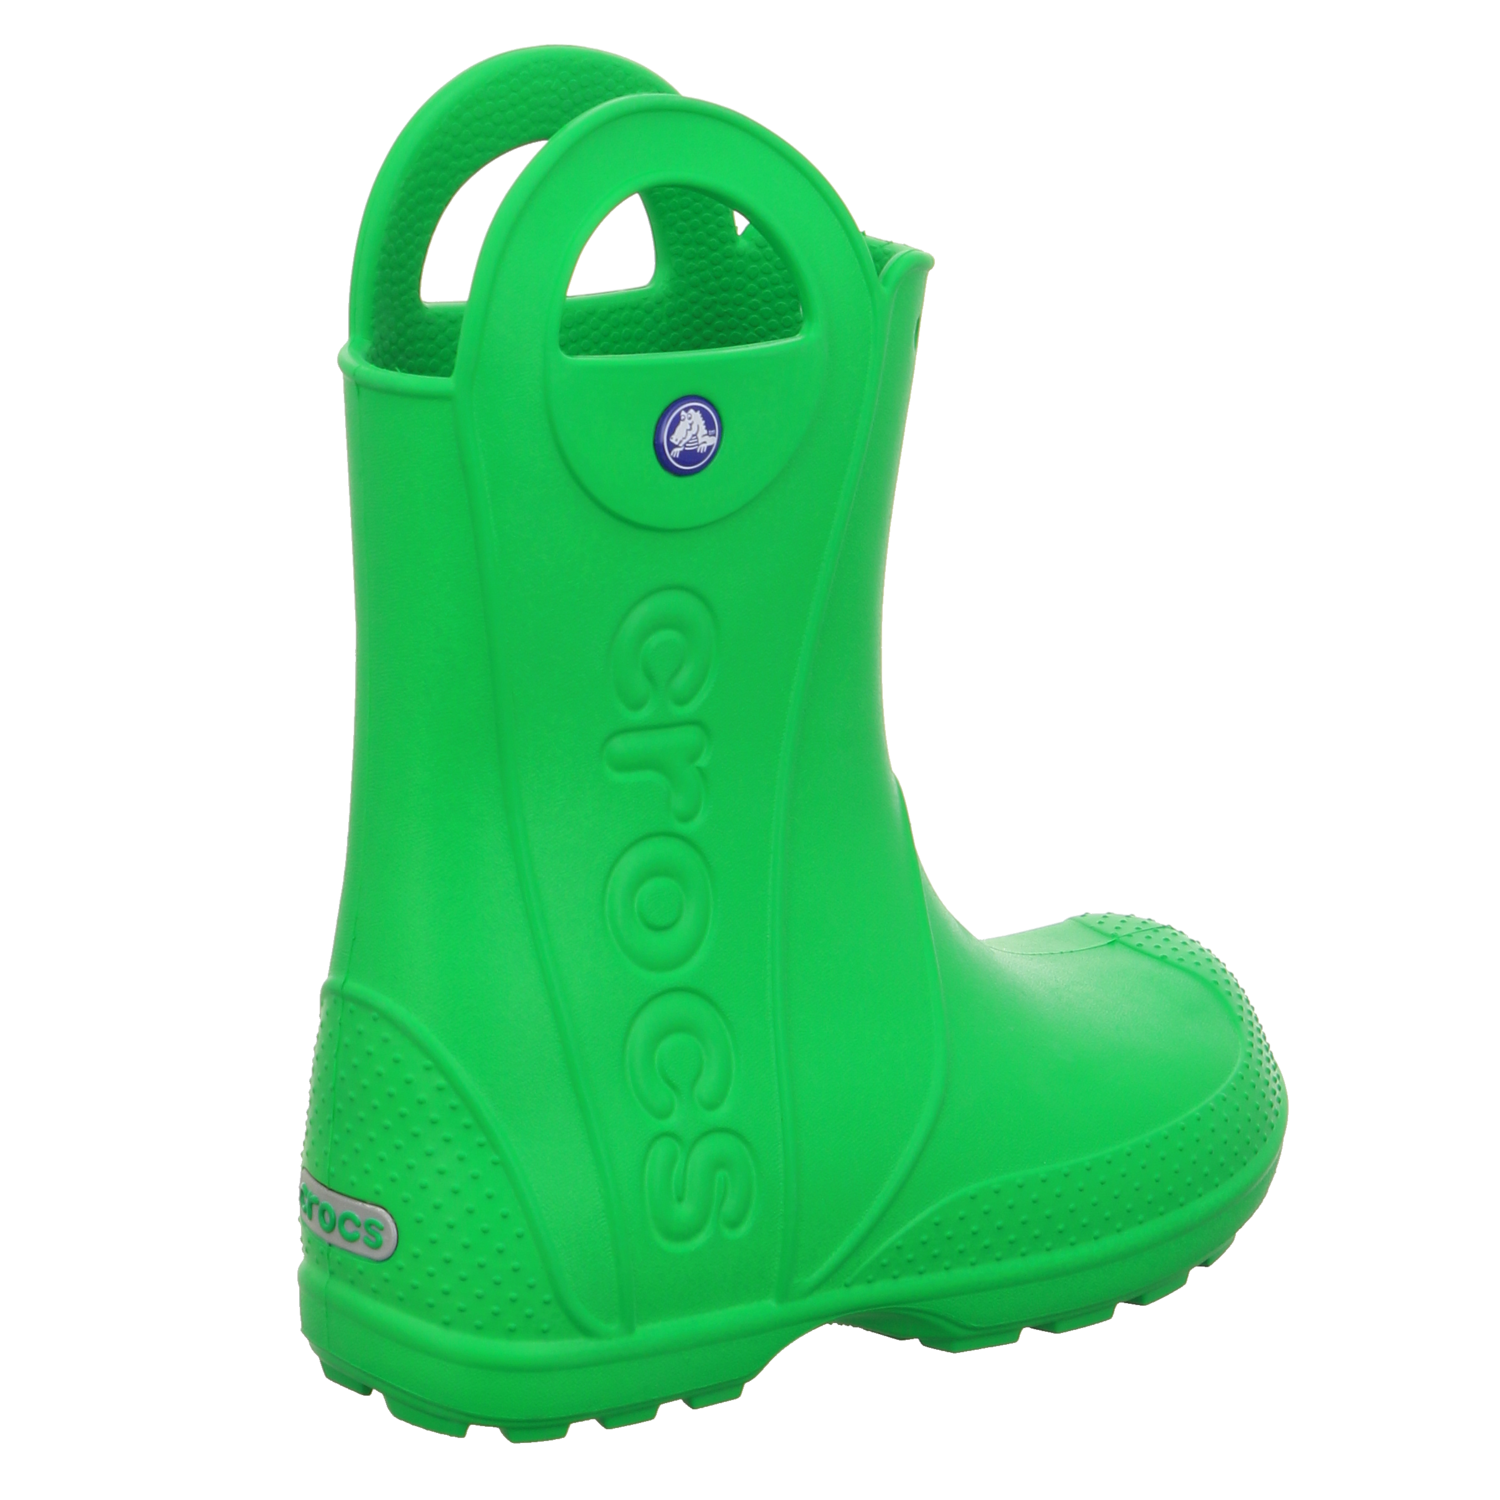 Crocs Regenstiefel grün